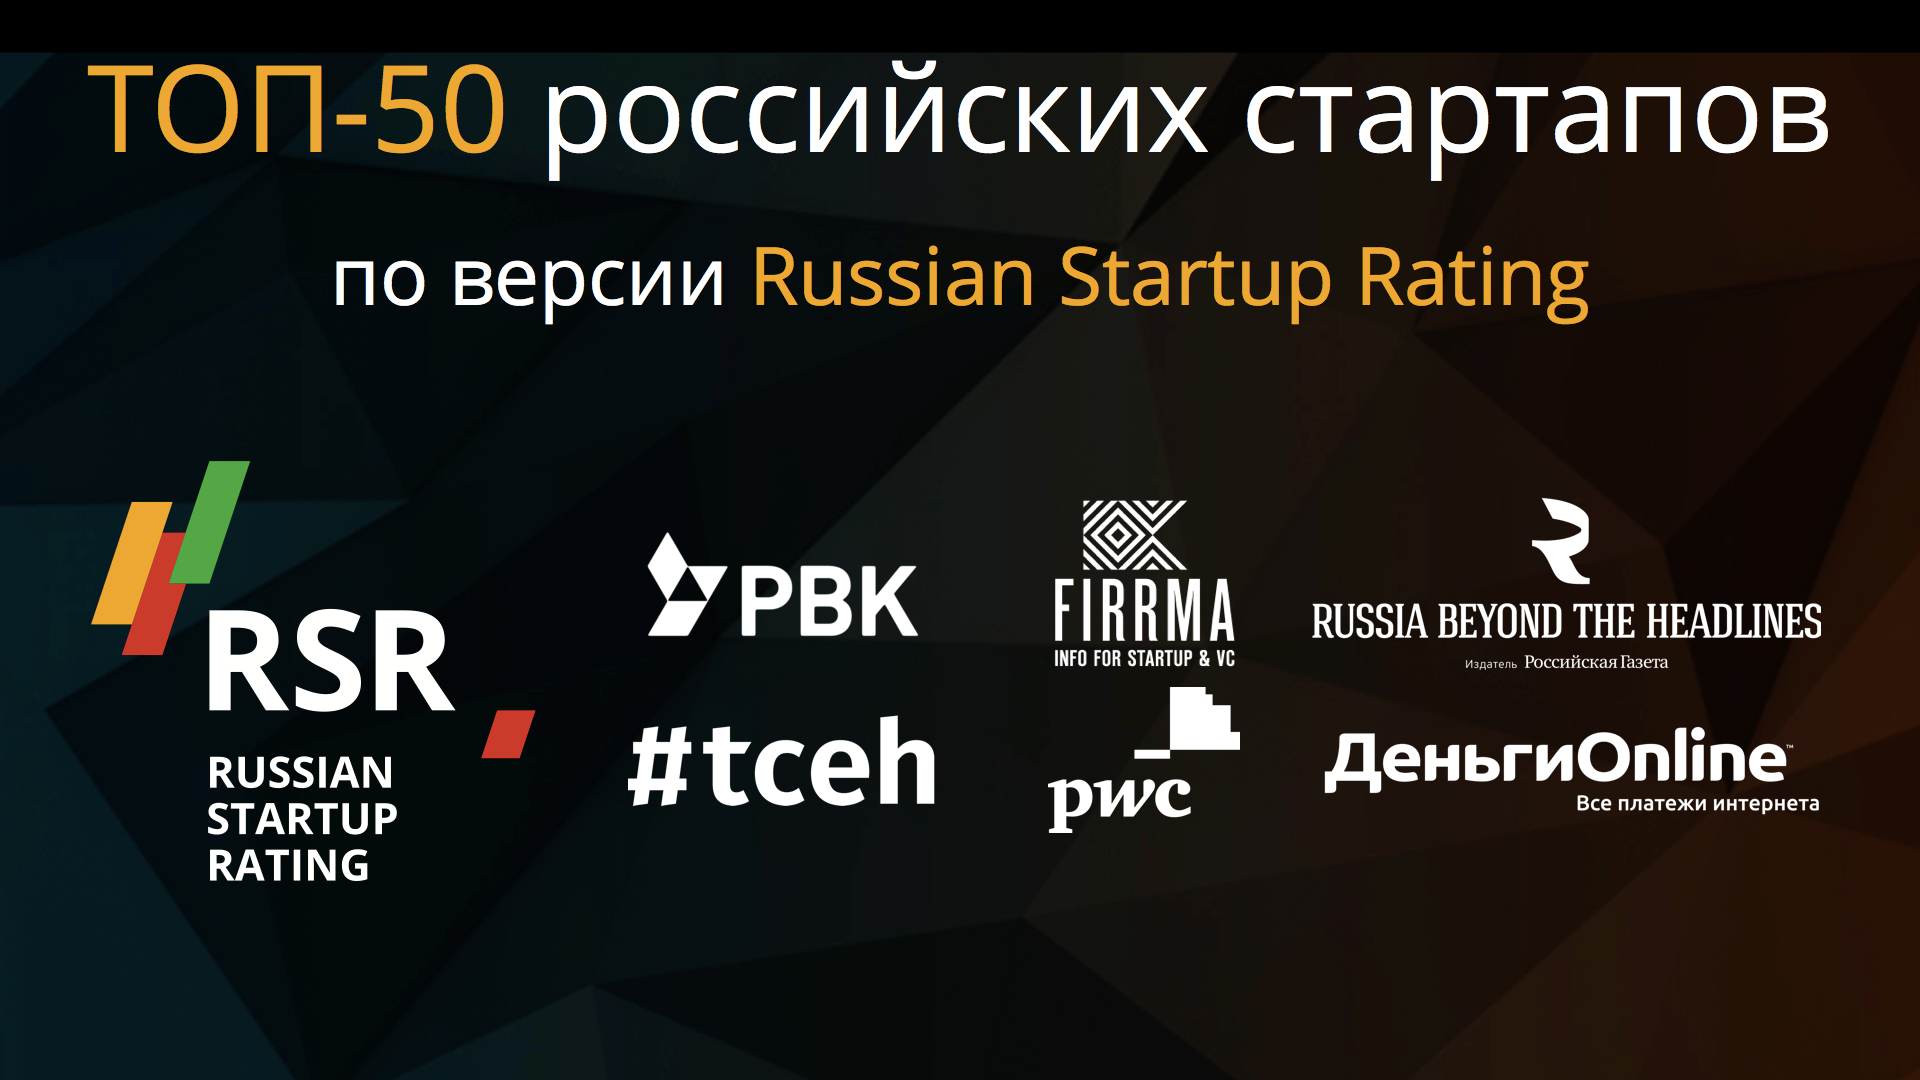 ТОП-50 по версии Russian Startup Rating